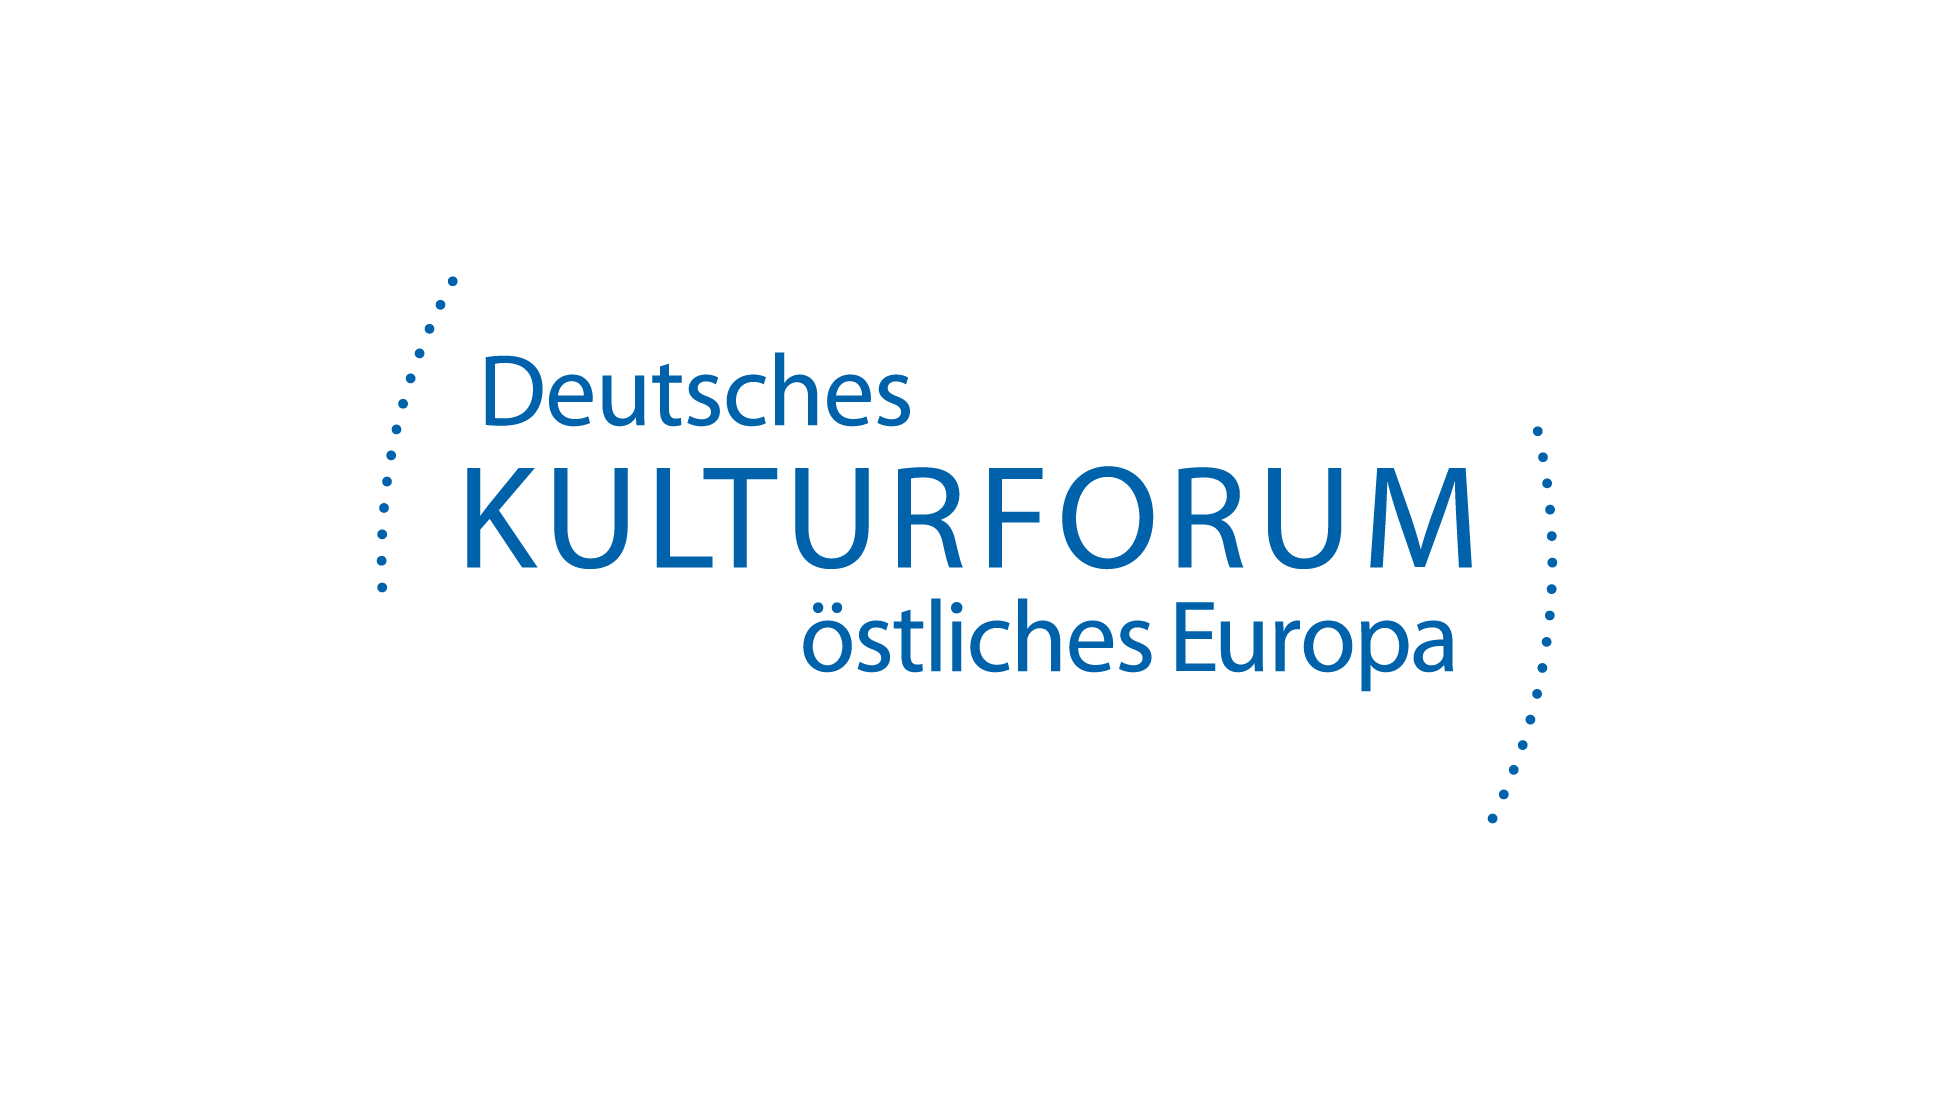 Deutsches Kulturforum östliches Europa